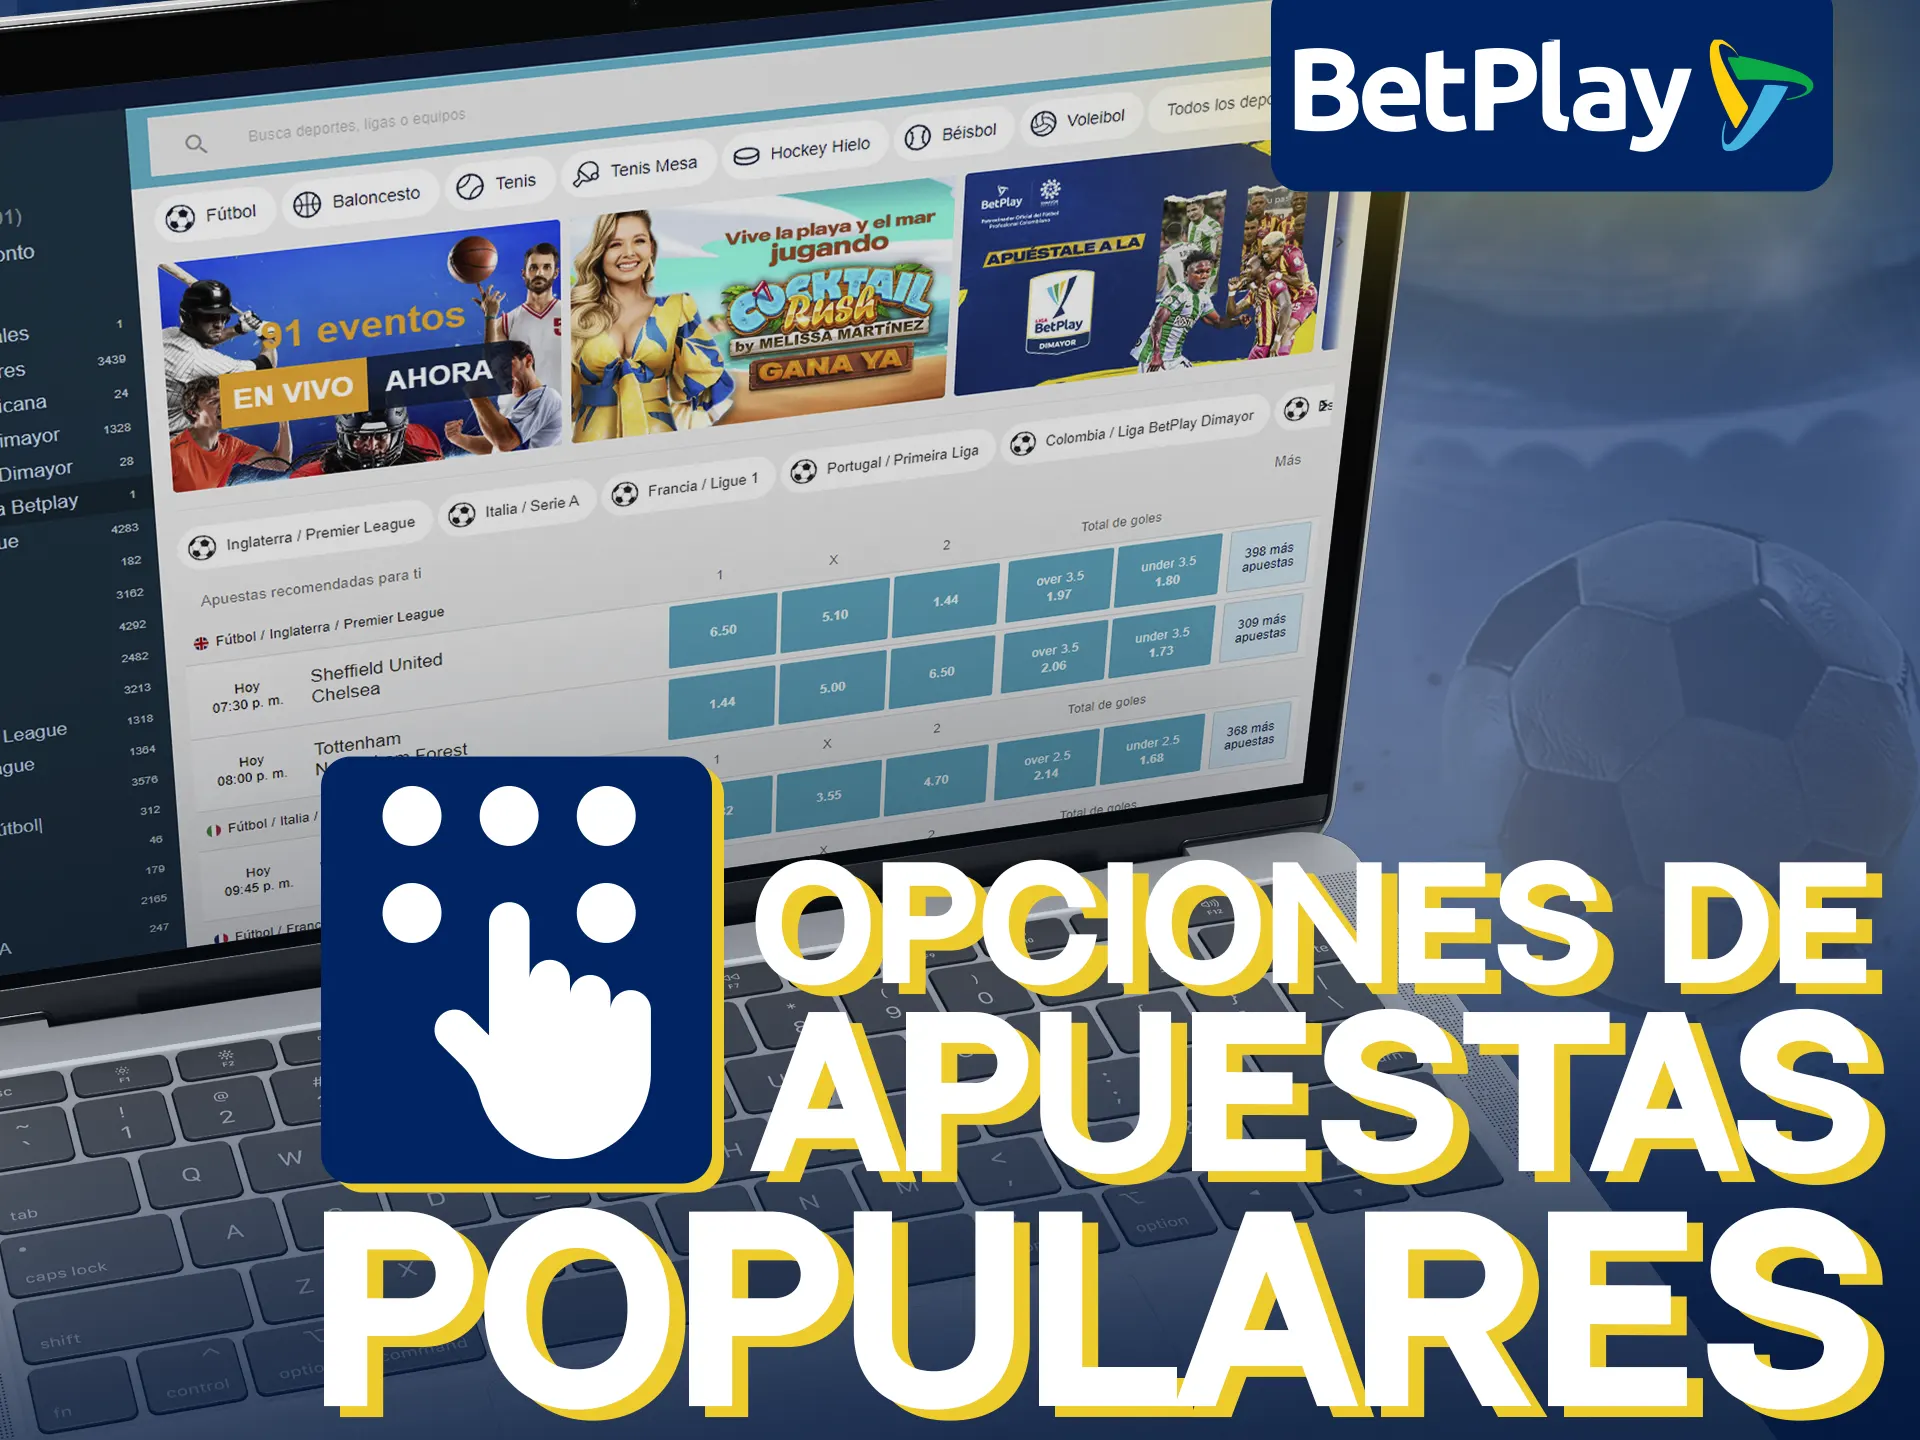 BetPlay ofrece opciones de apuestas populares.